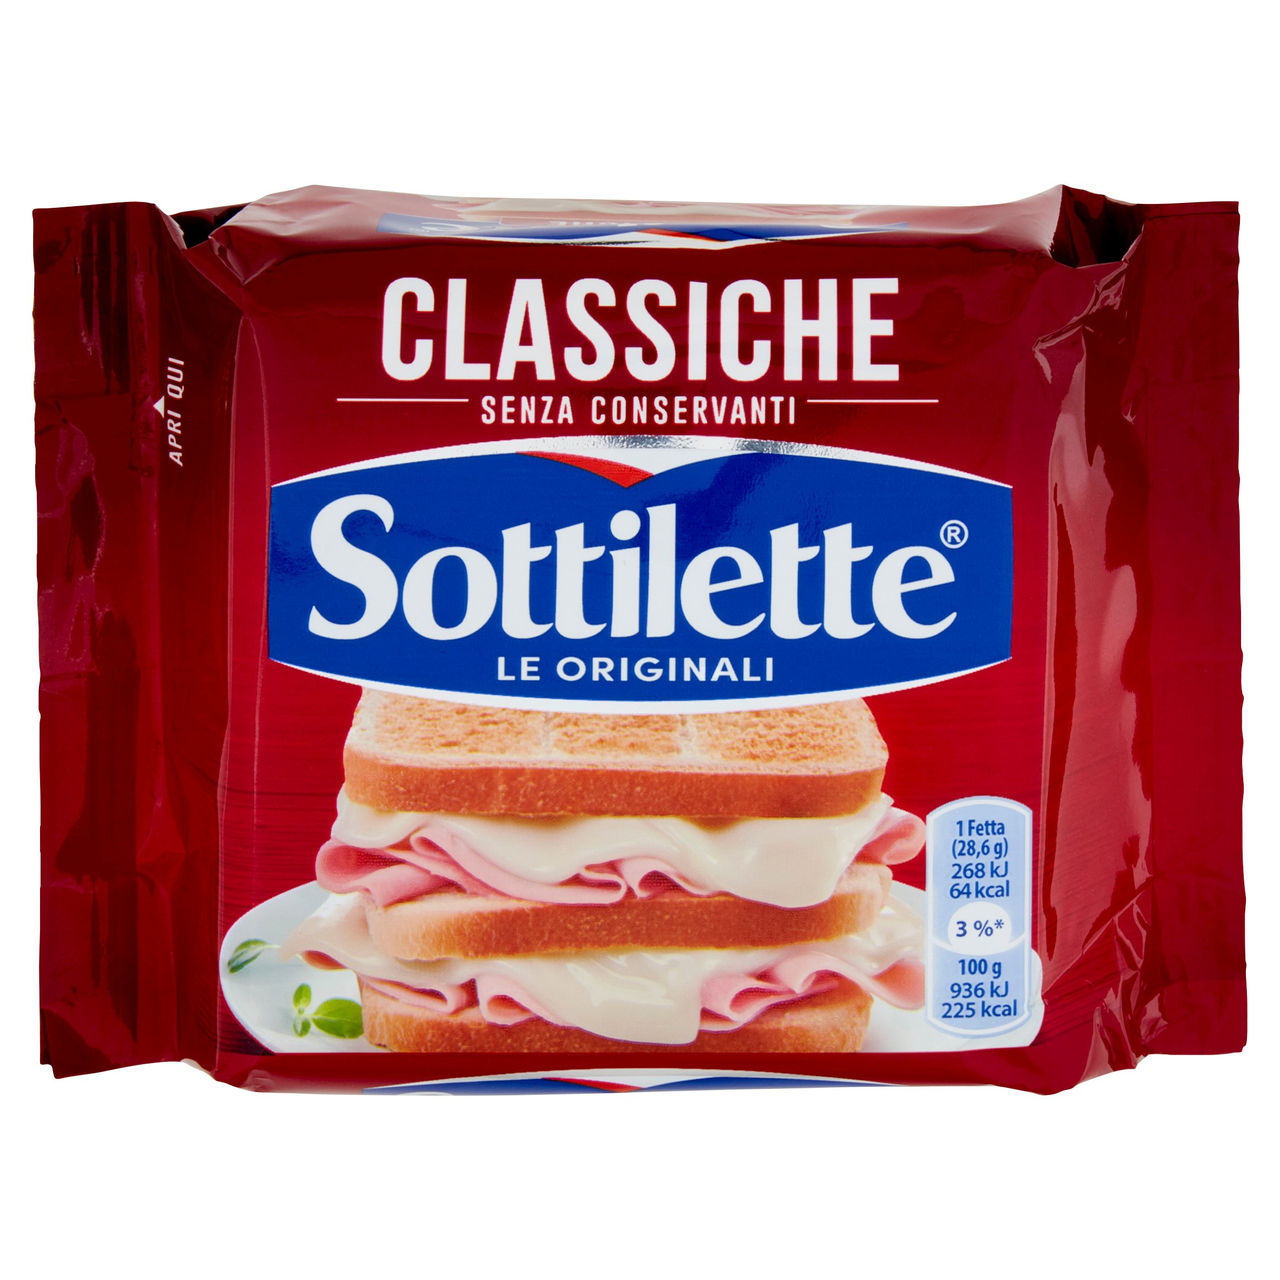 Sottilette Classiche 400g in vendita online